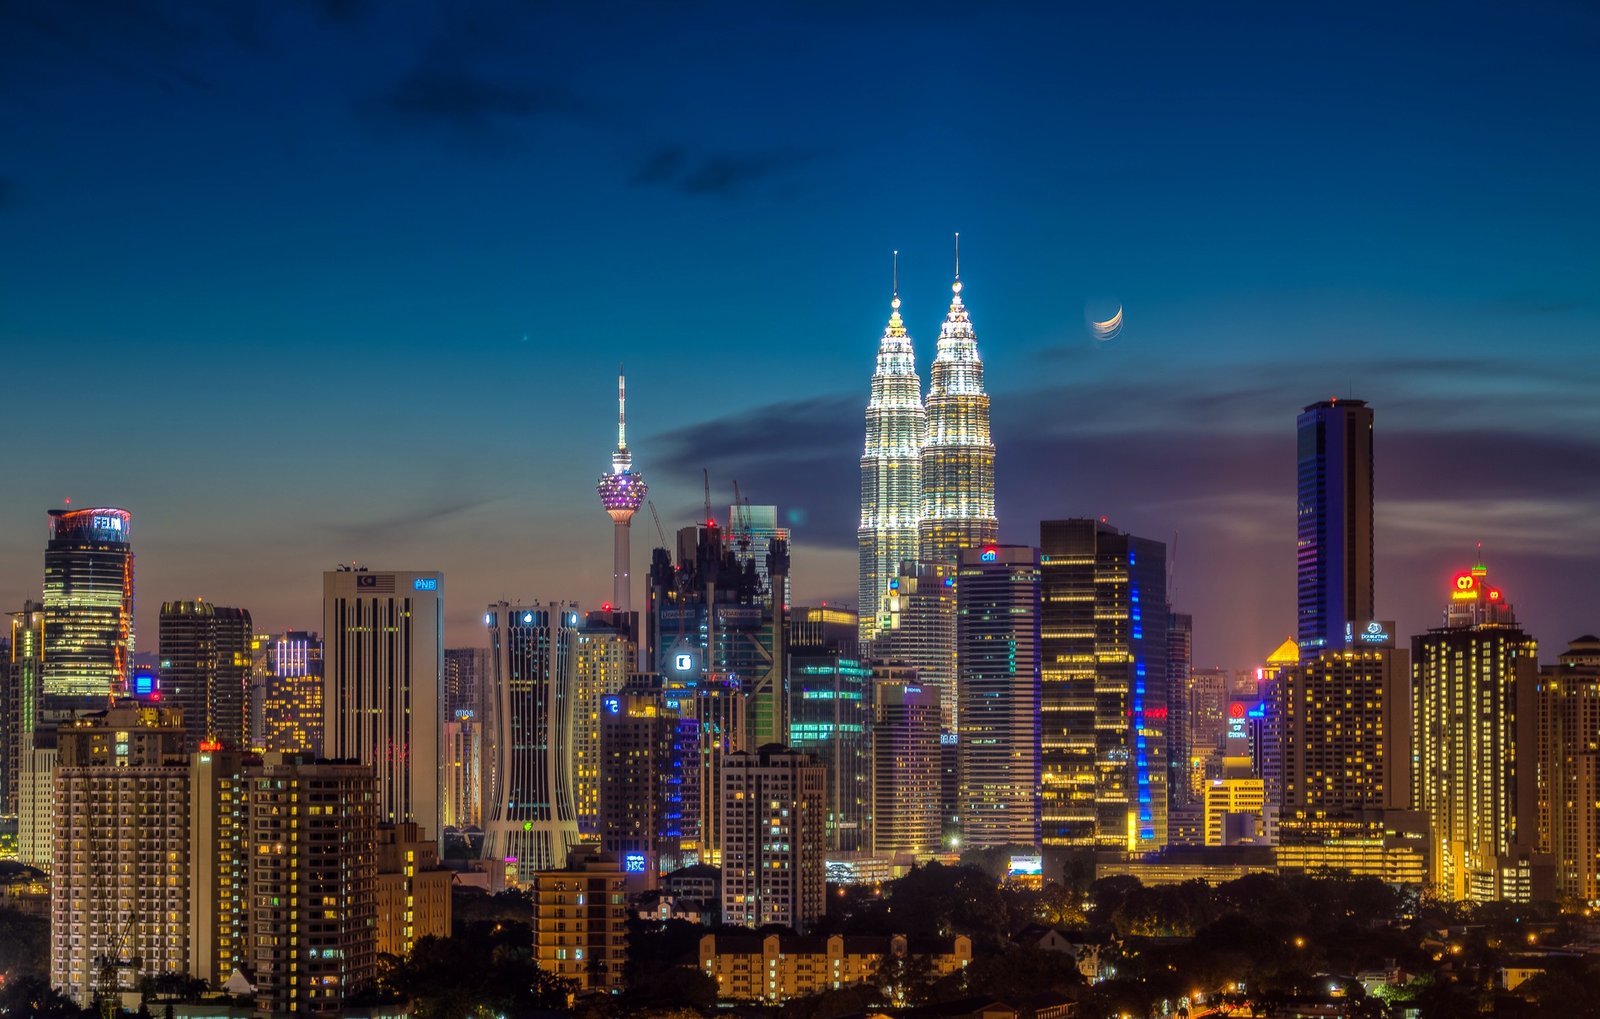 Kuala Lumpur at night